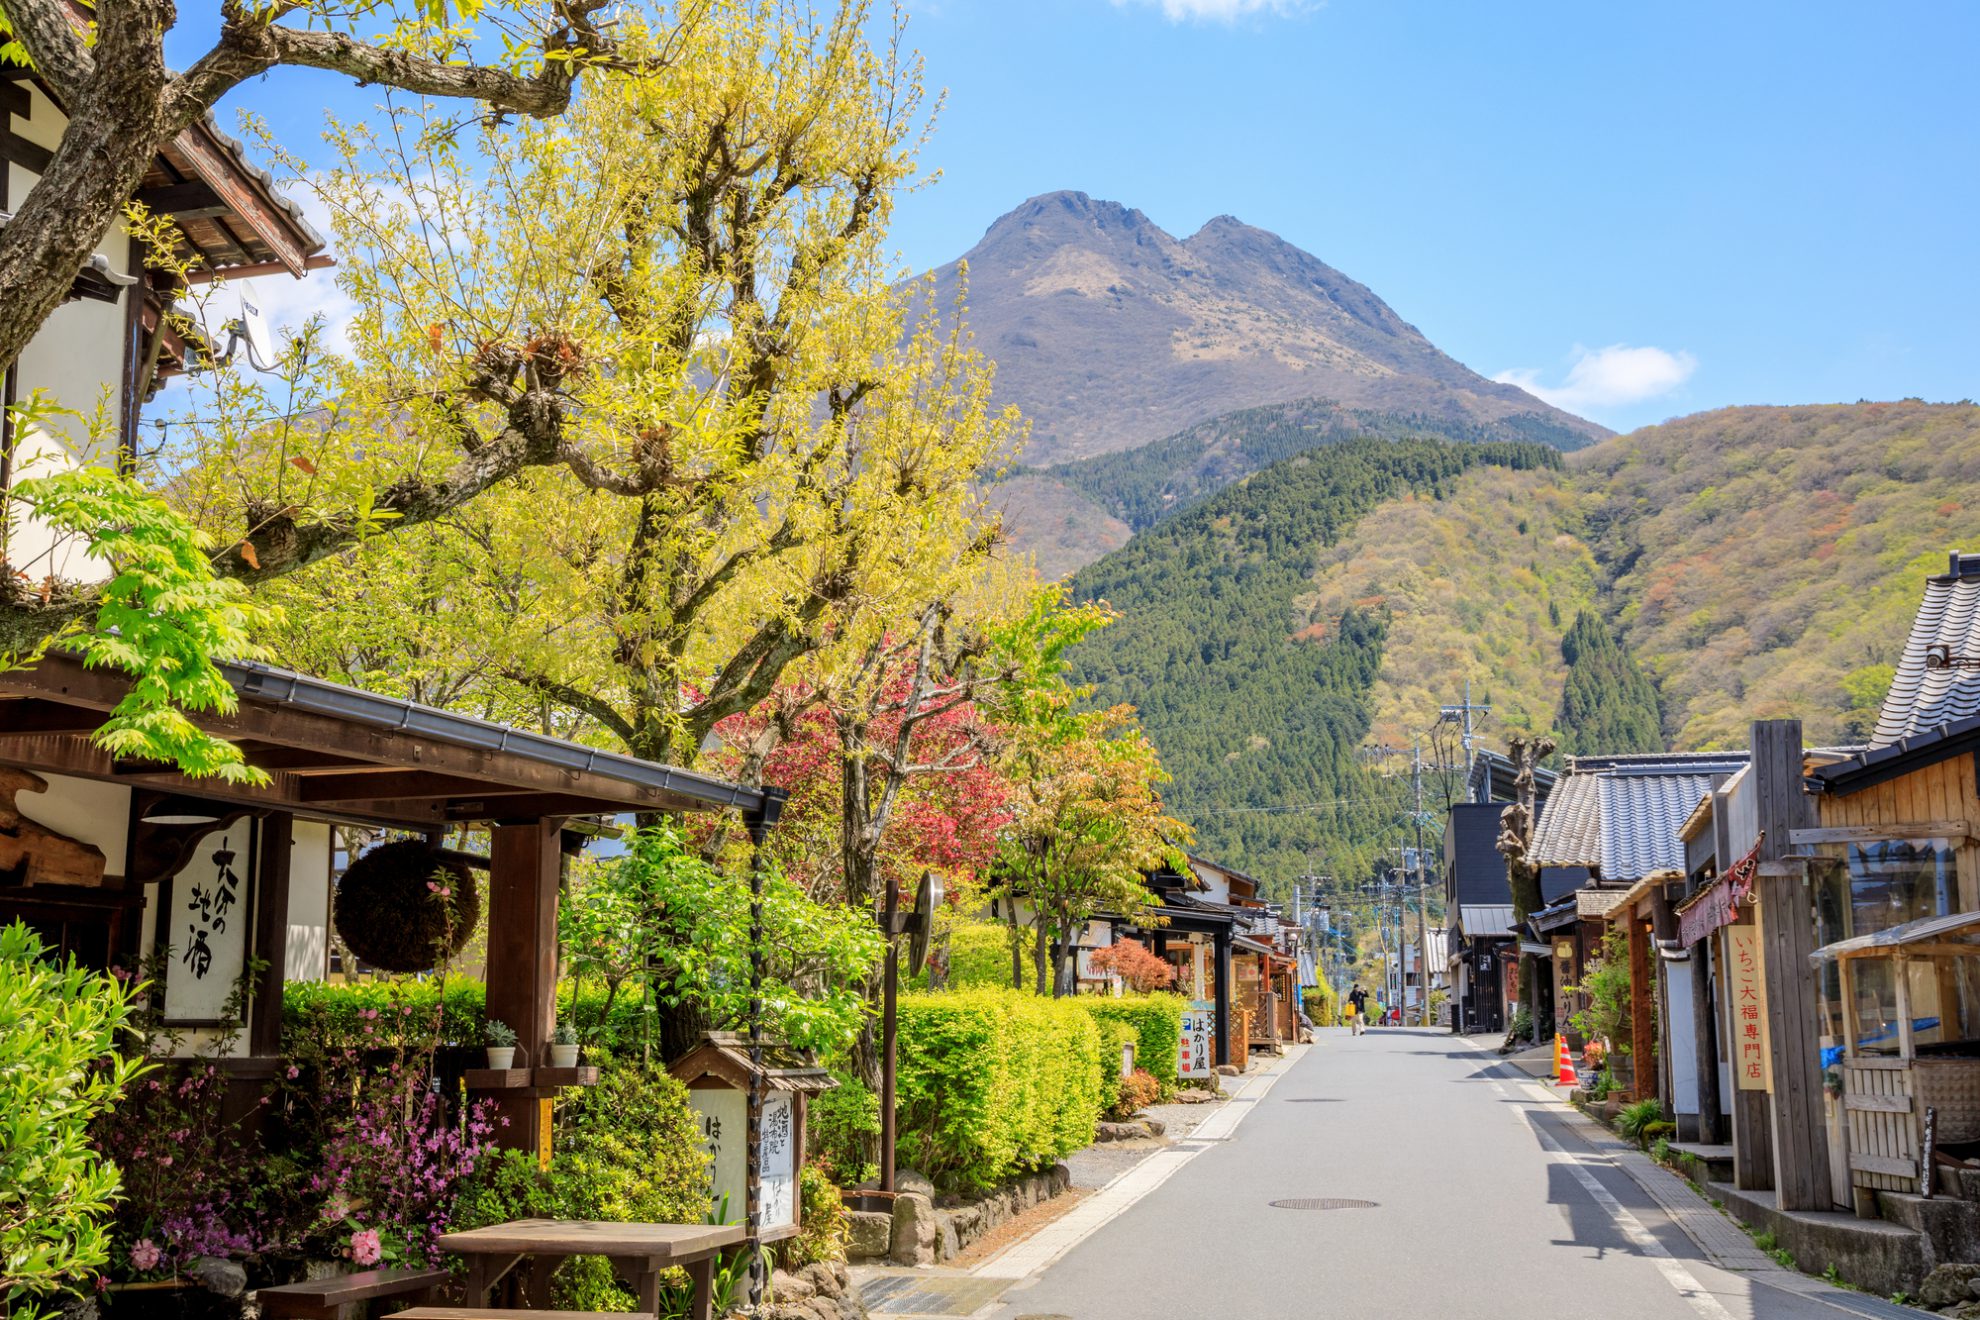 【大分】「湯布院」を観光するなら湯の坪街道がおすすめ – Let's SEE Japan